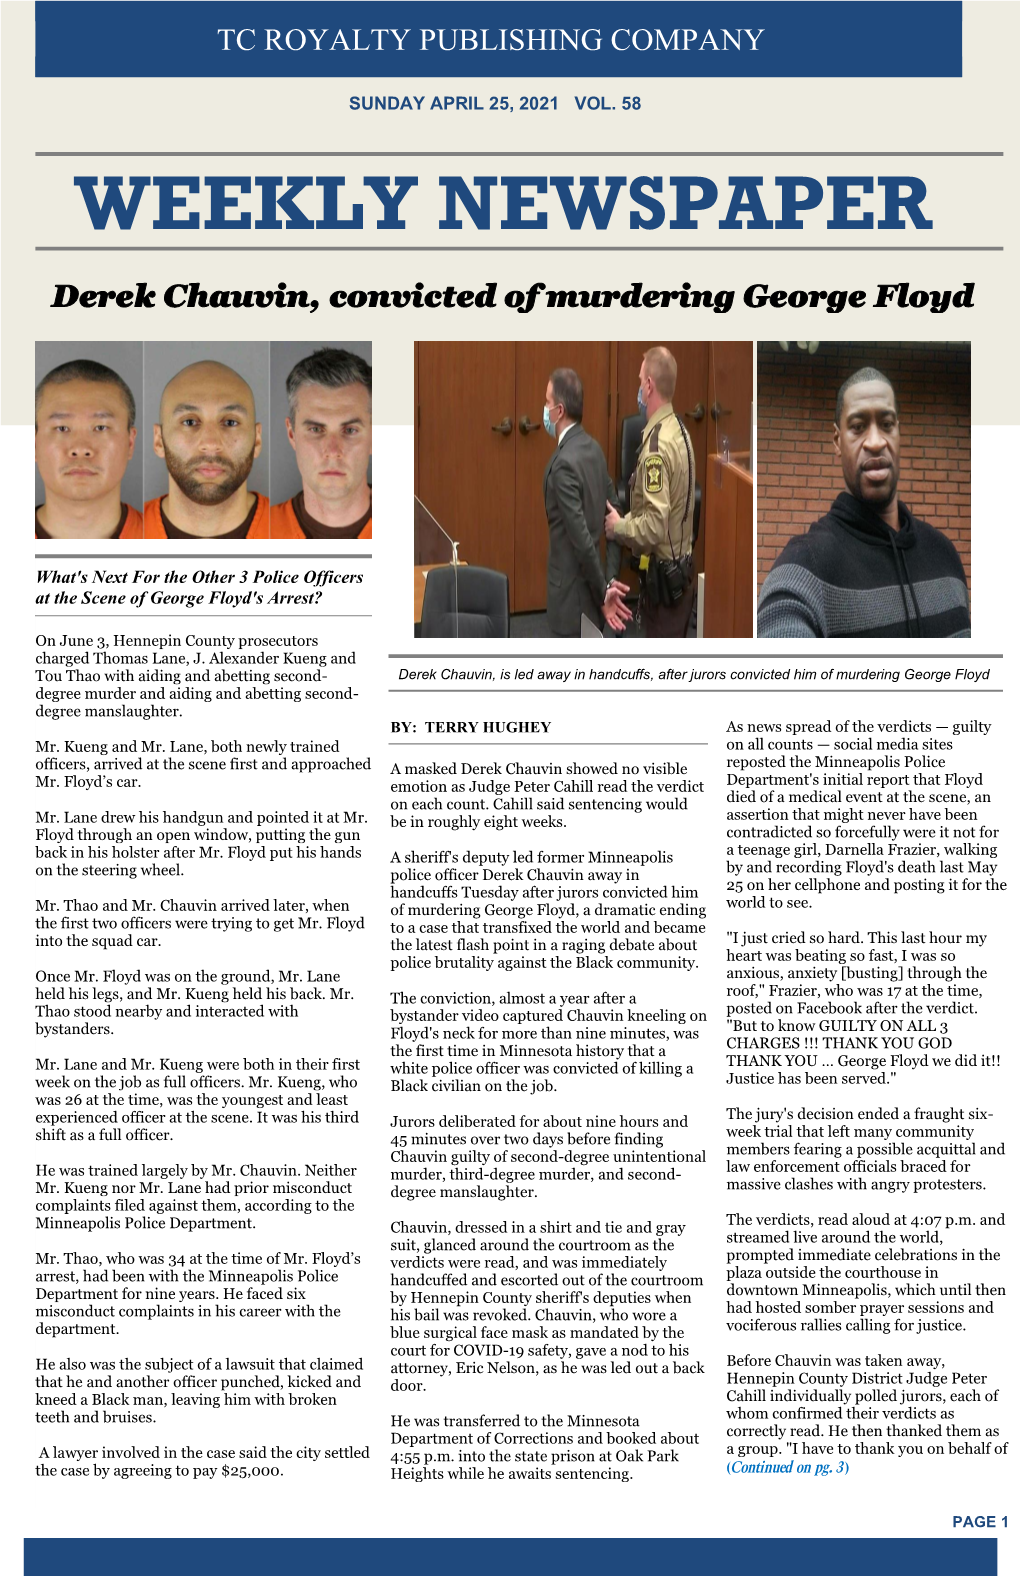 WEEKLY NEWSPAPER Derek Chauvin, Convicted of Murdering George Floyd